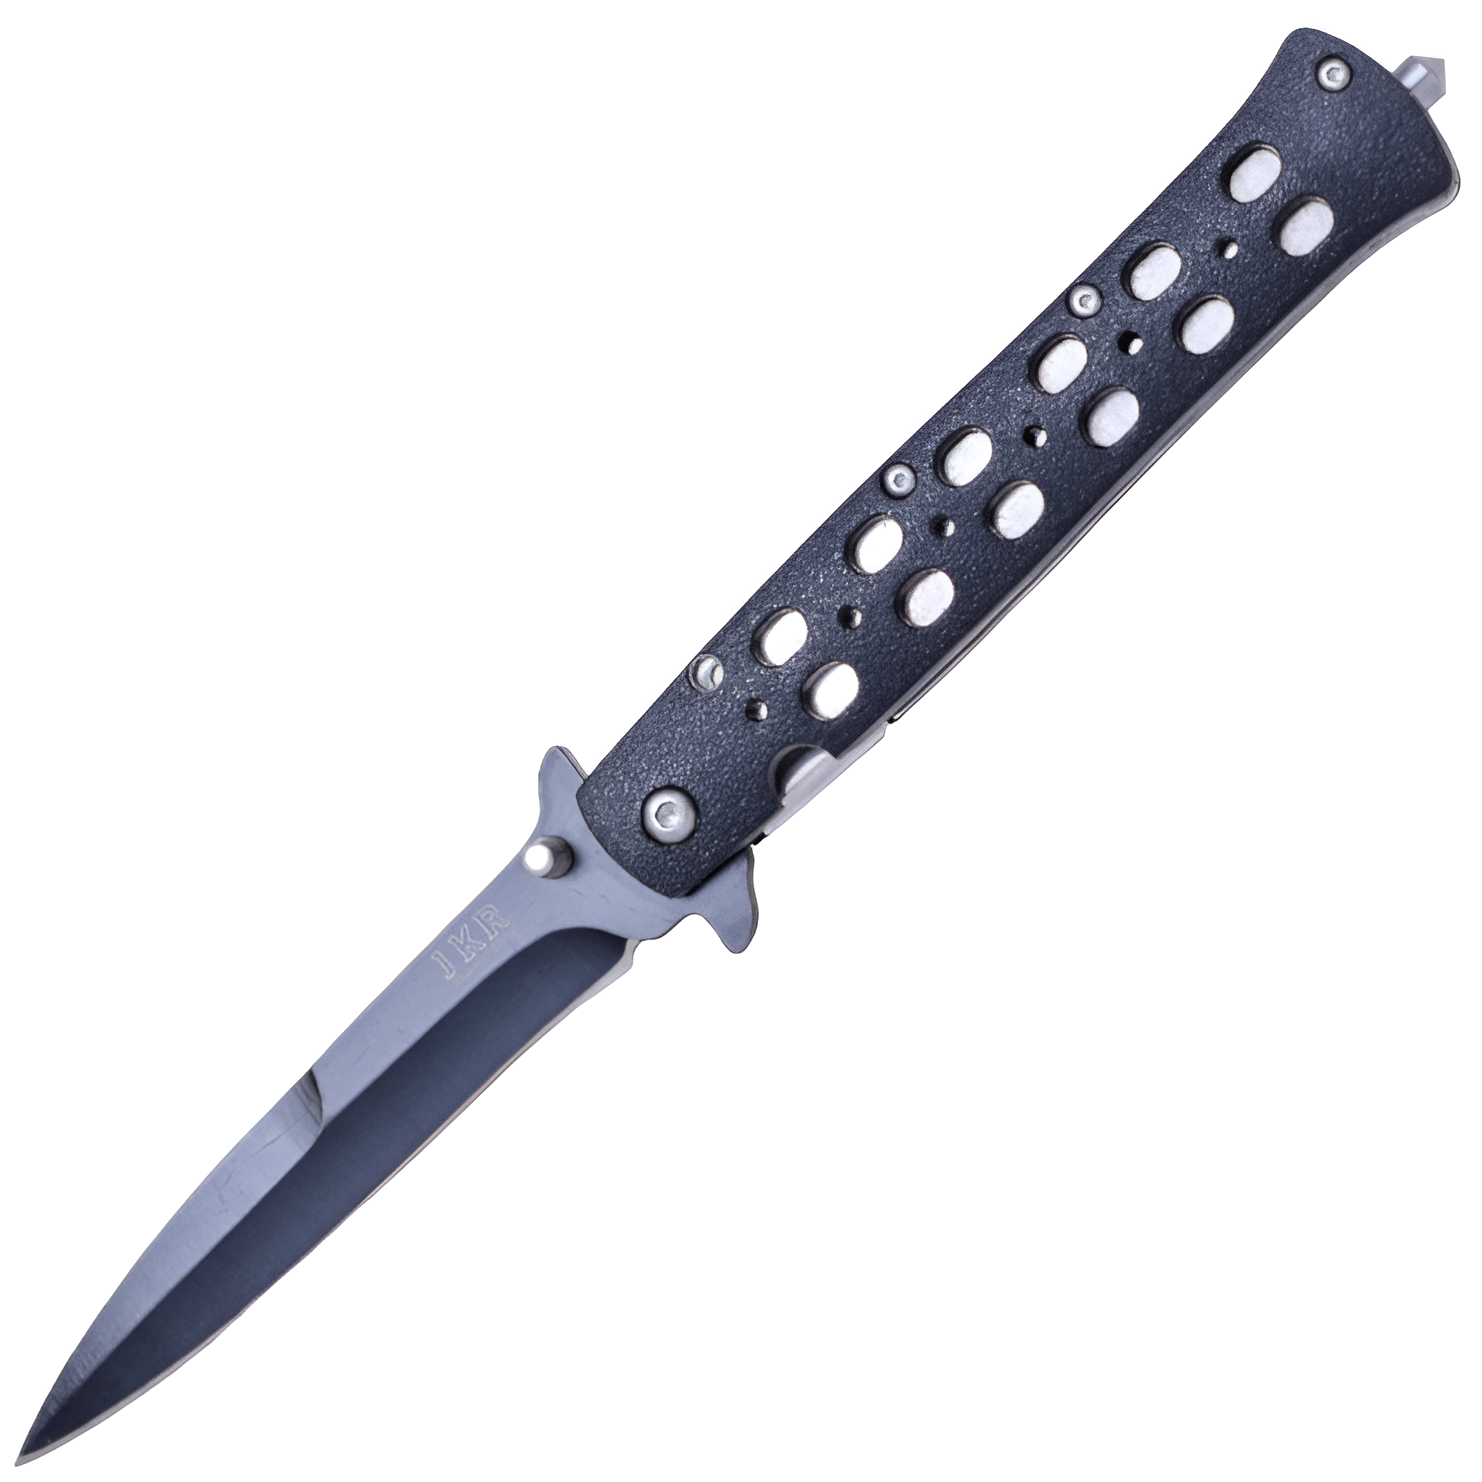 JKR Zavírací nůž, 10 cm, hliník, černý, JKR0501